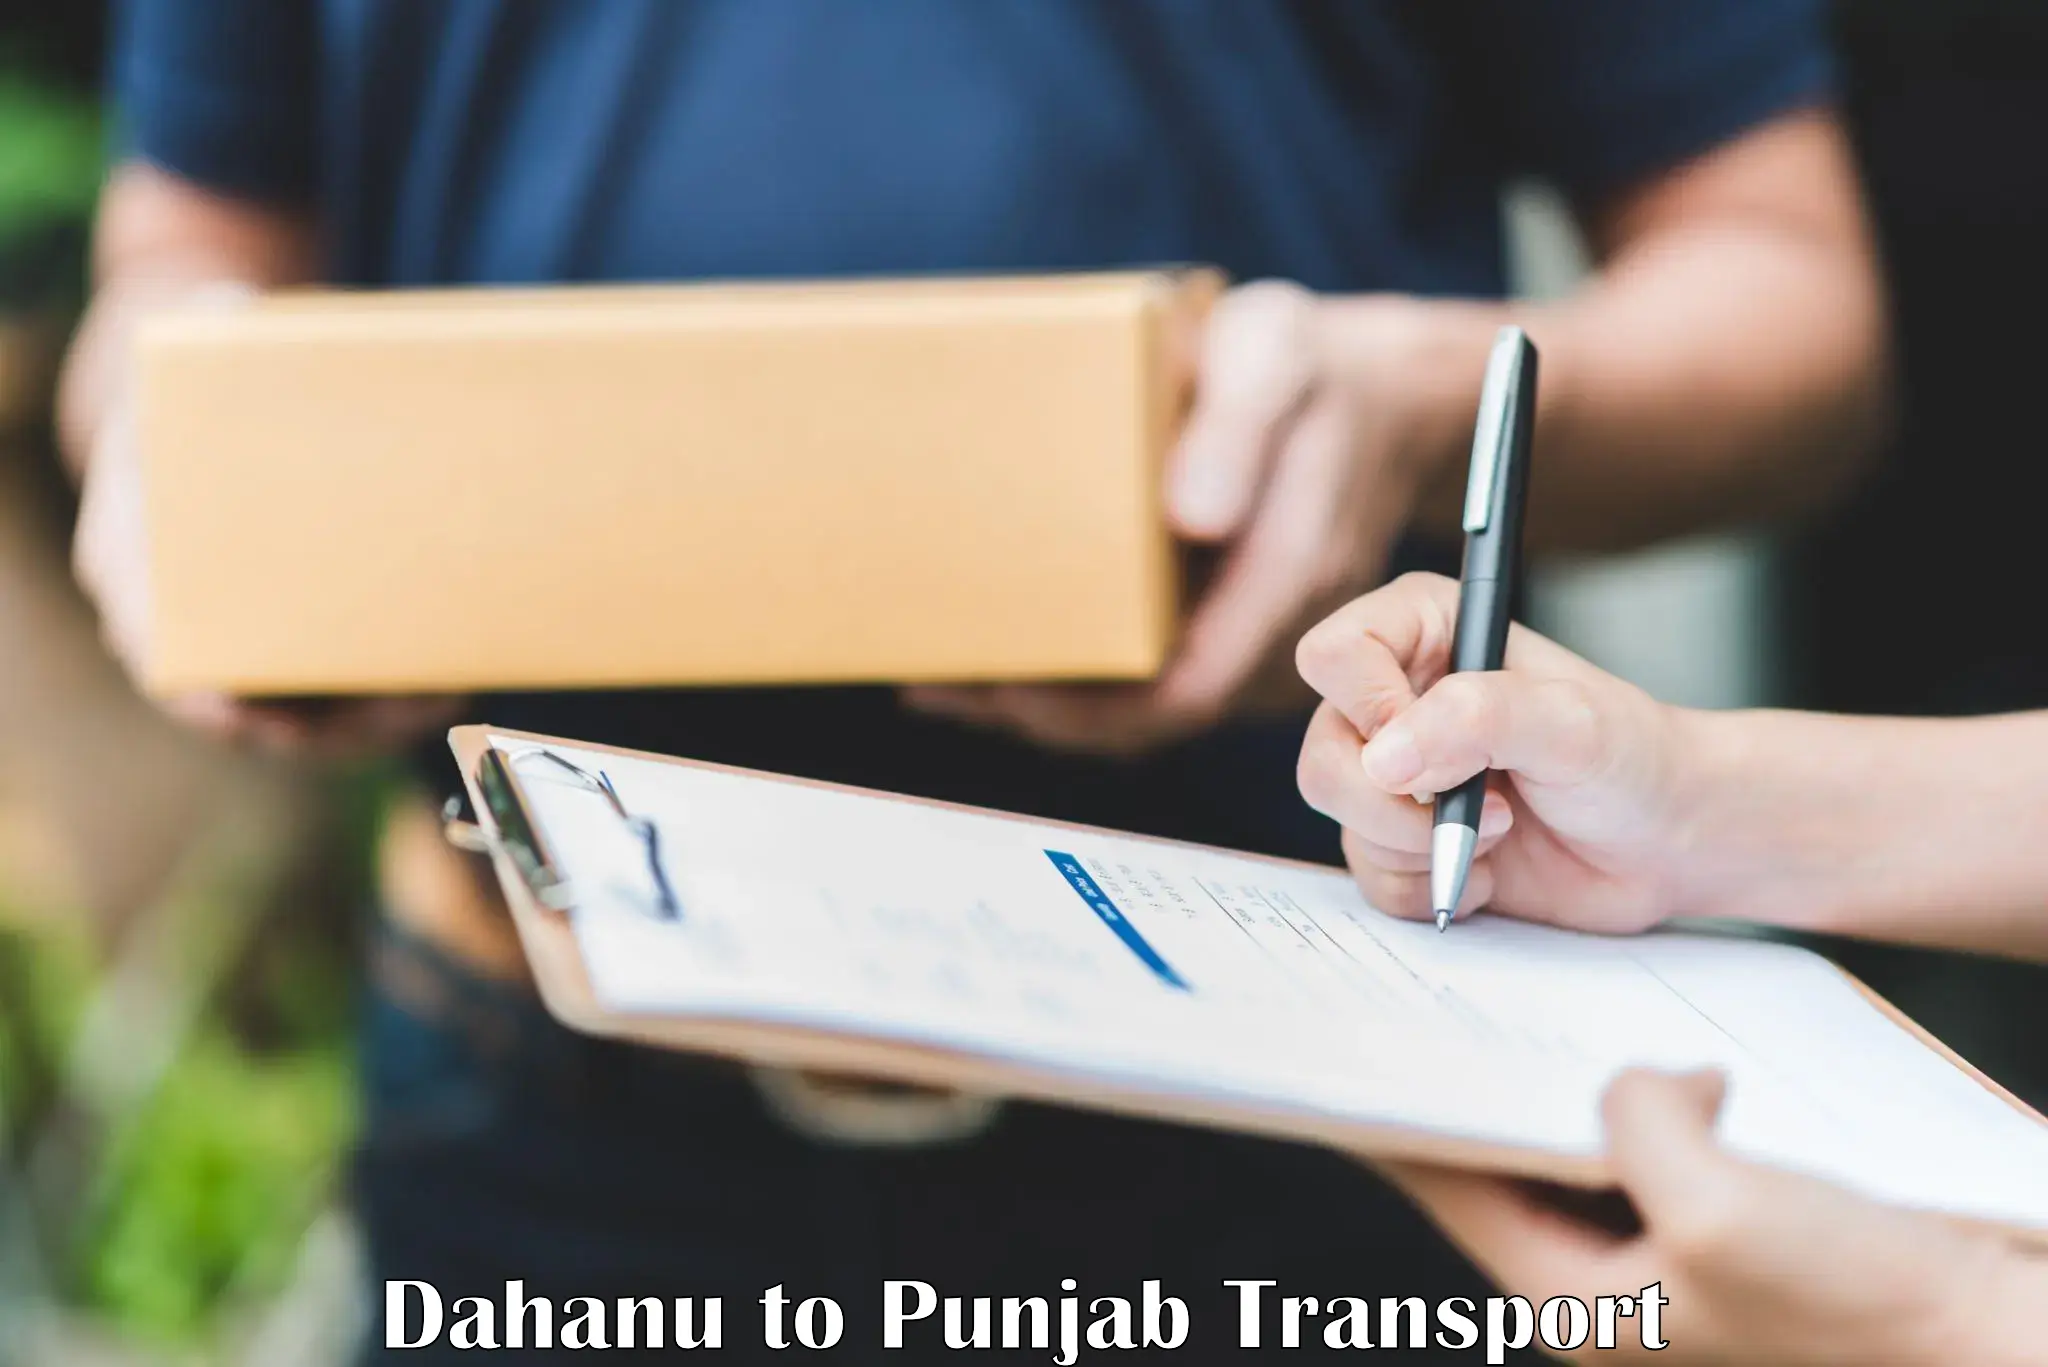 Daily transport service Dahanu to Punjab